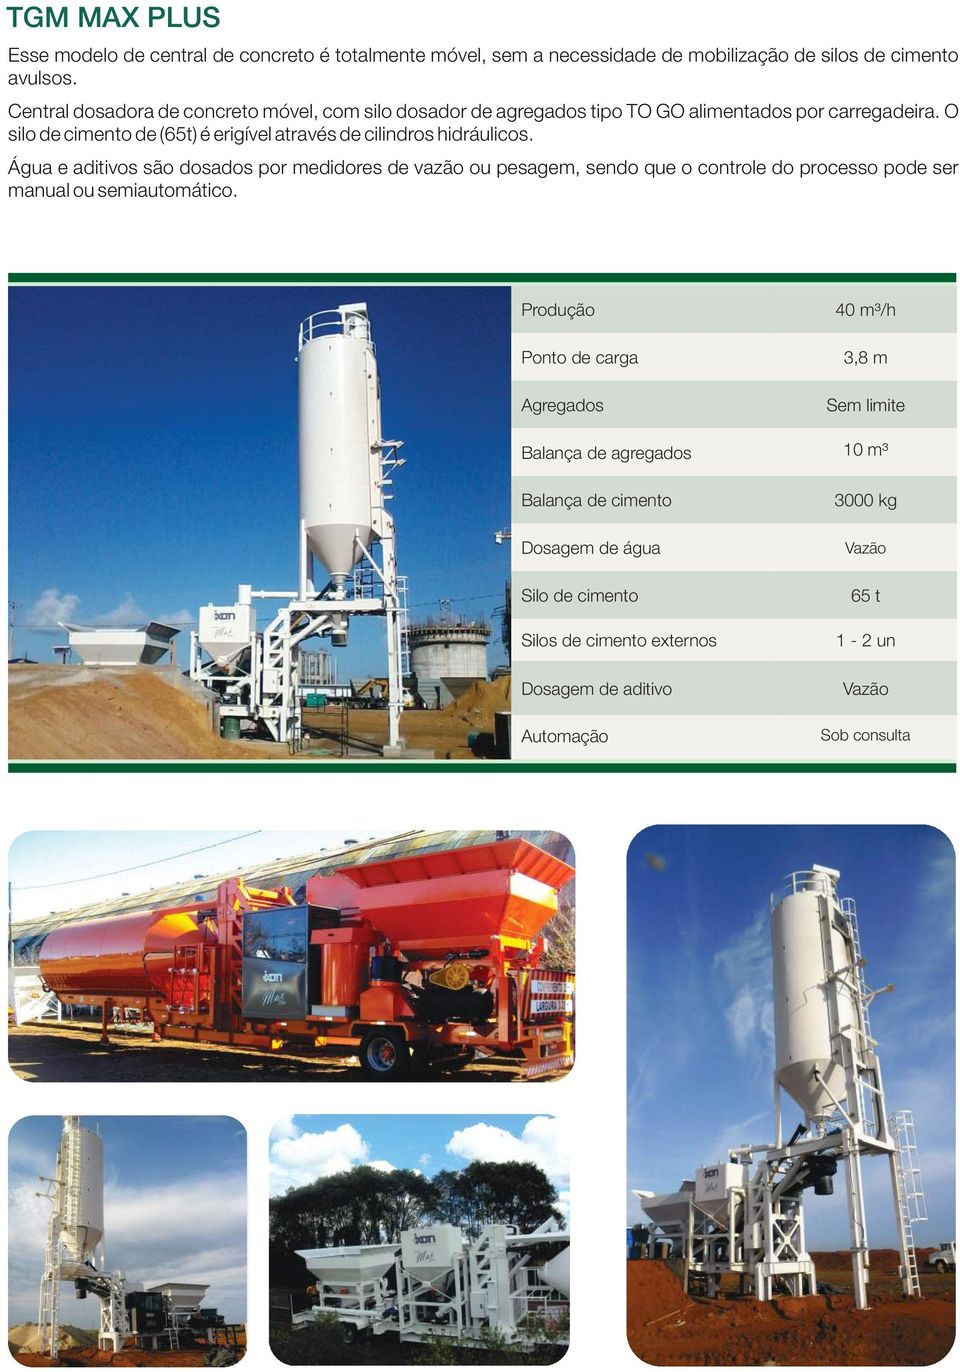 O silo de cimento de (65t) é erigível através de cilindros hidráulicos.